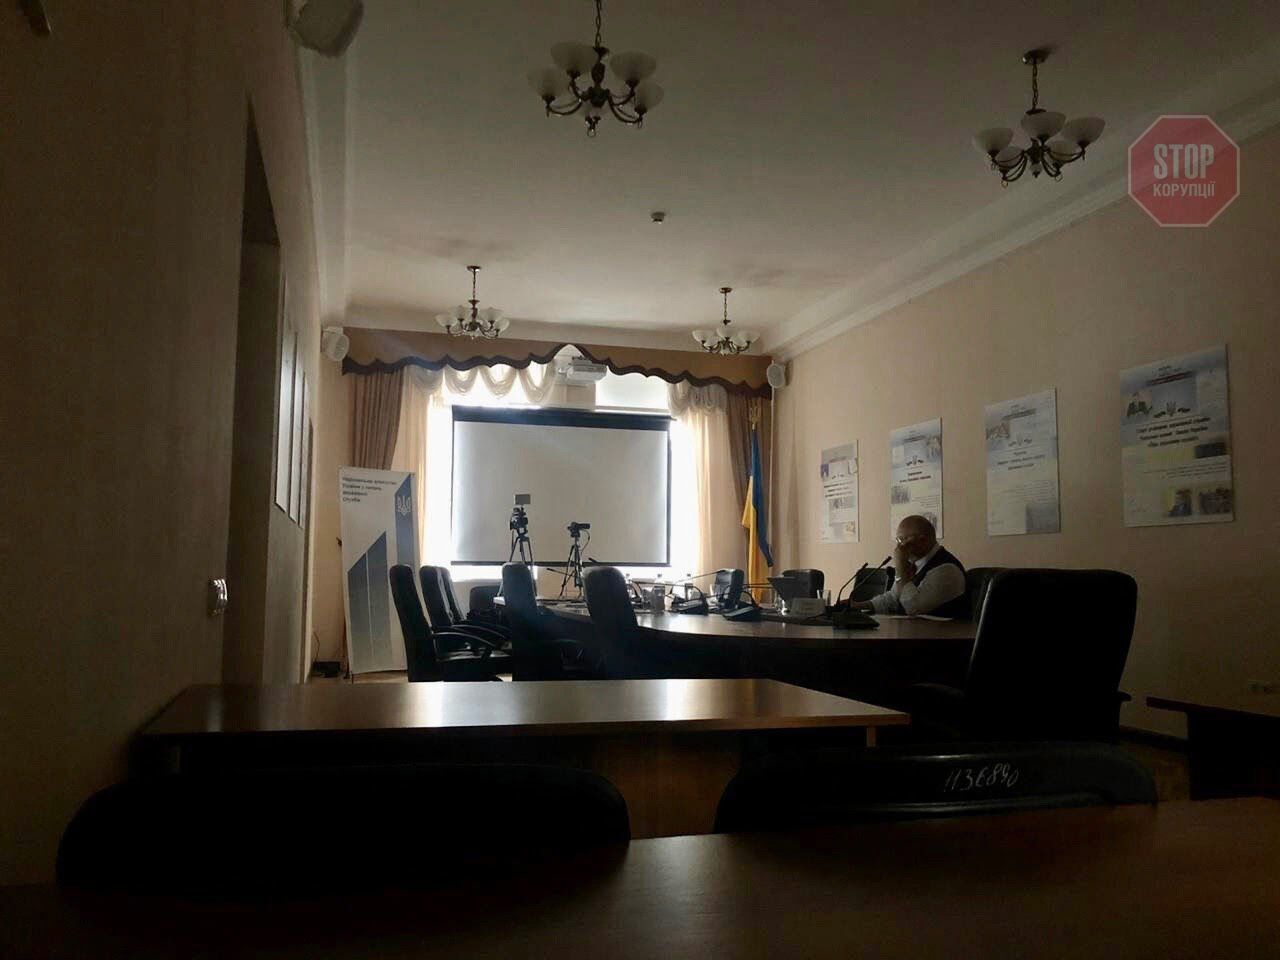  Під час засідання комісії вимкнули світло Фото: СтопКор